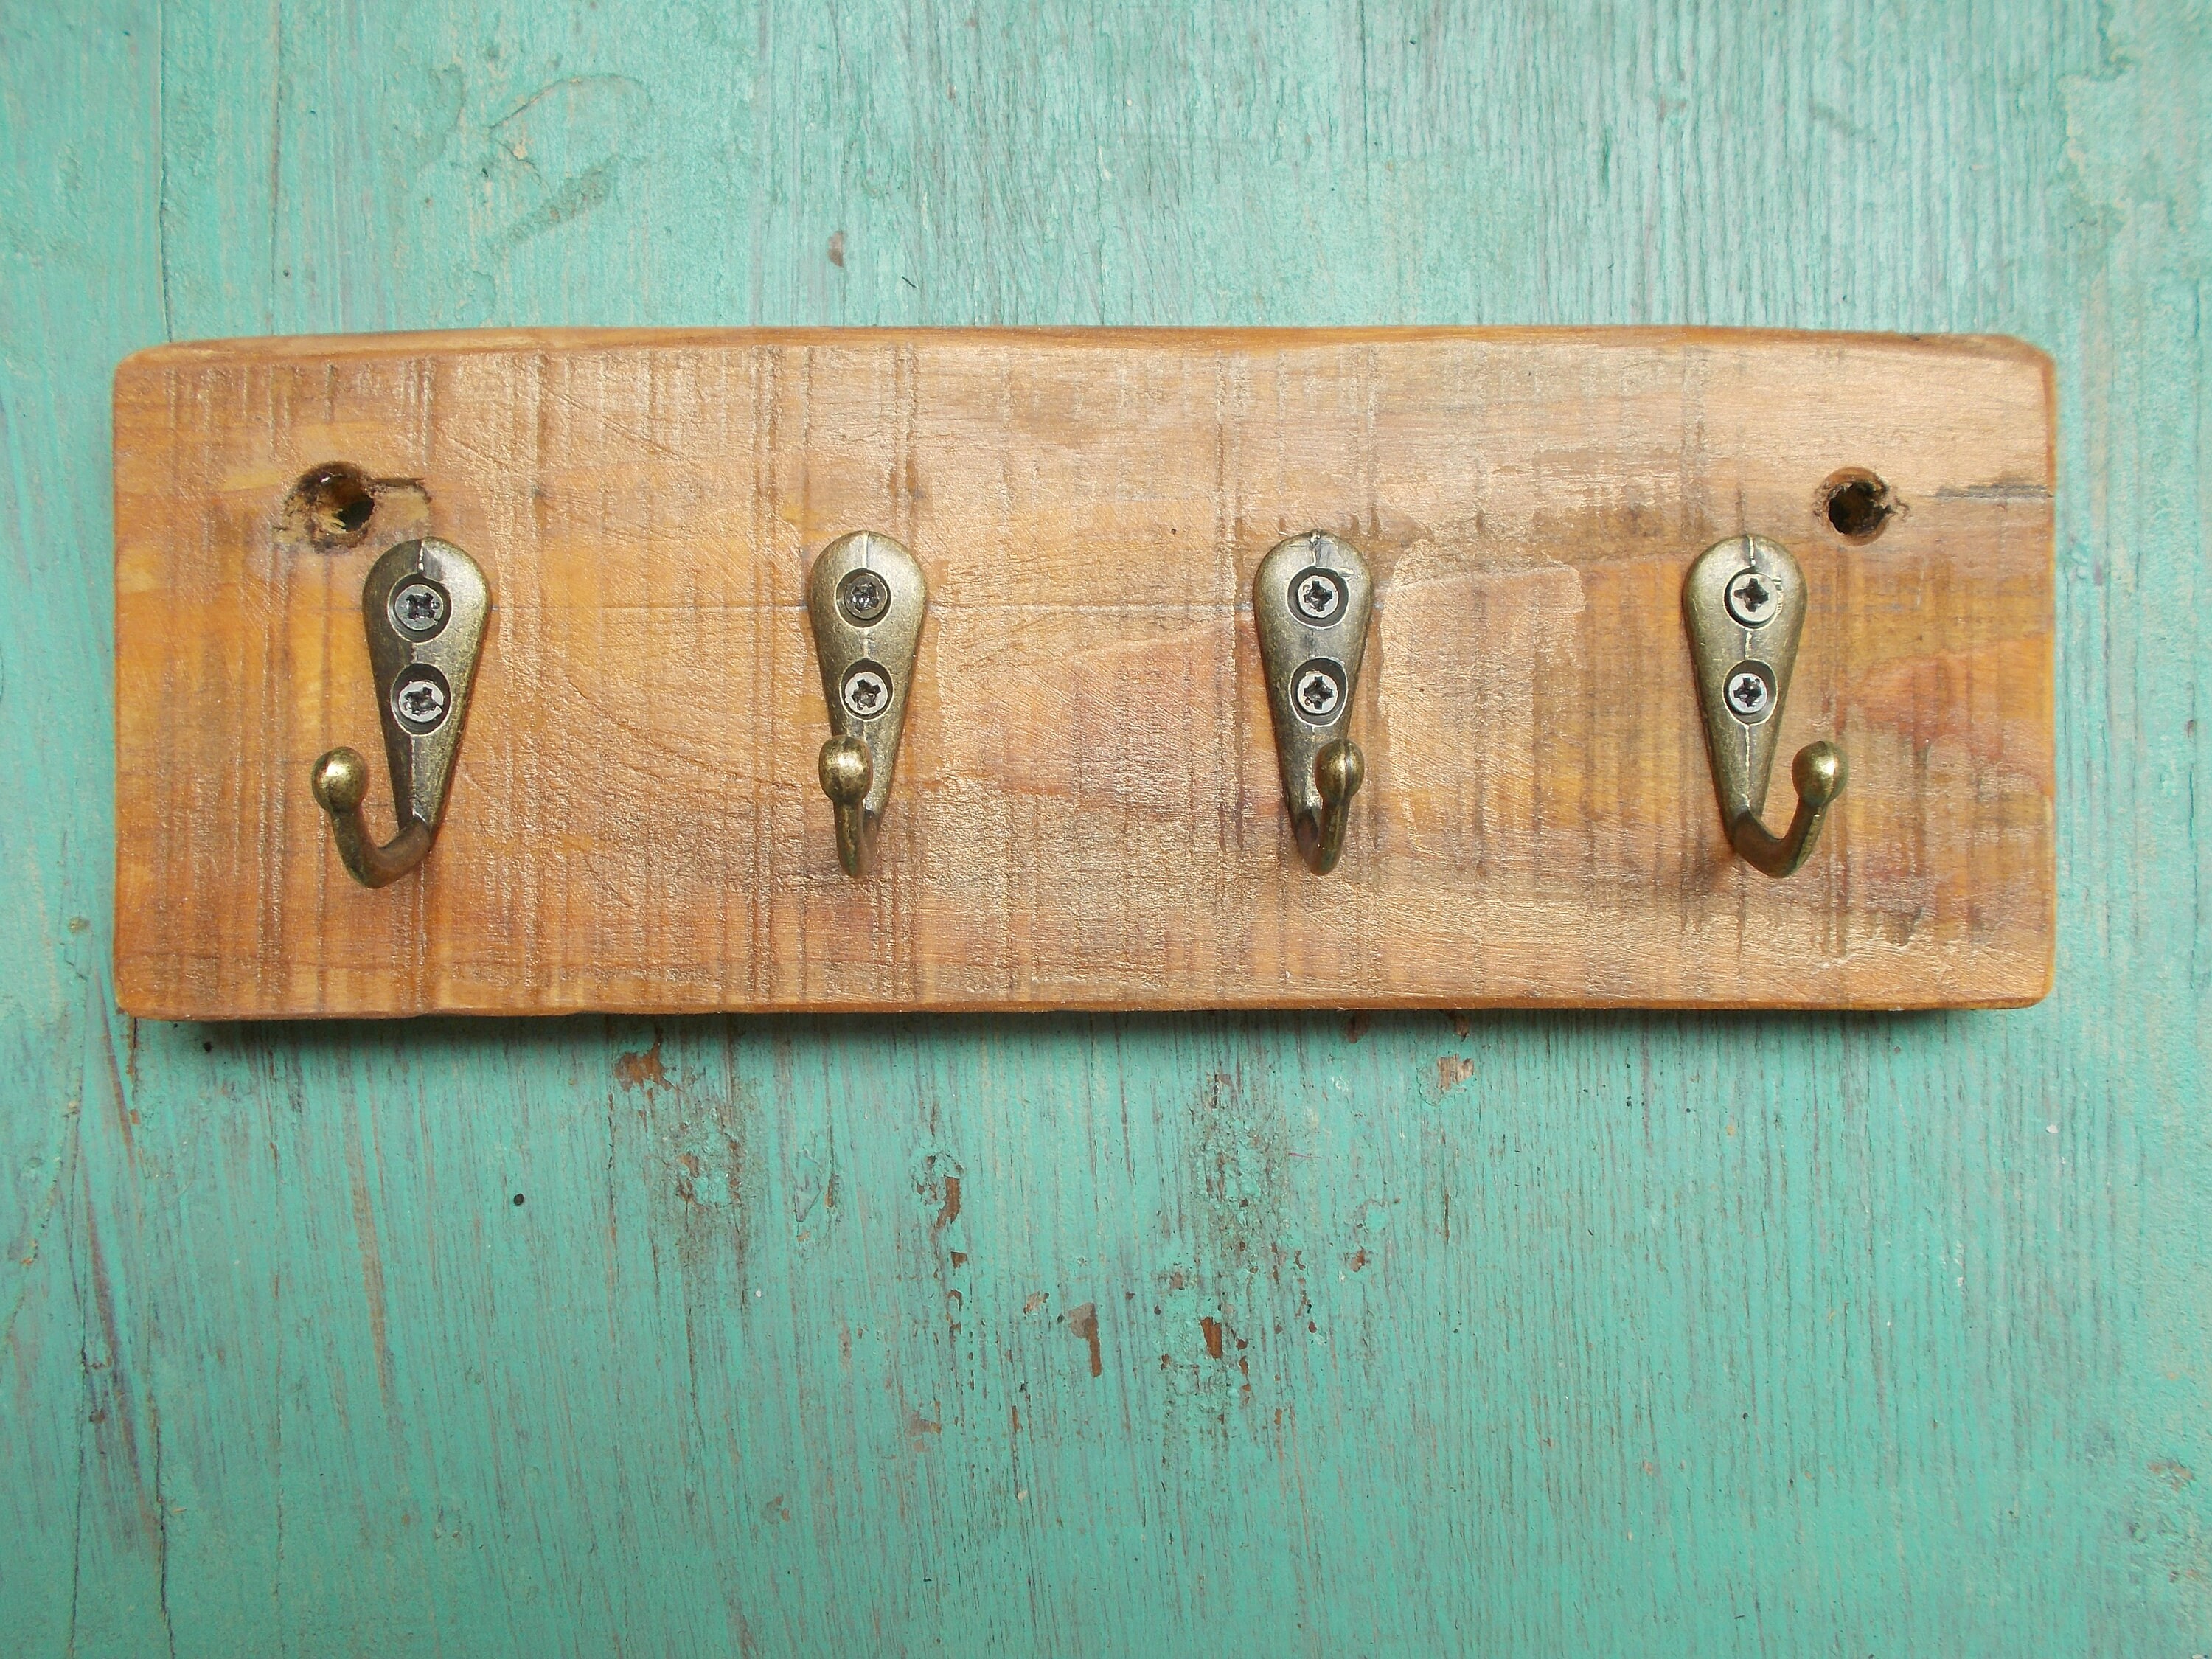 Handmade key board / hook strip from an old wooden board 18 cm | Etsy